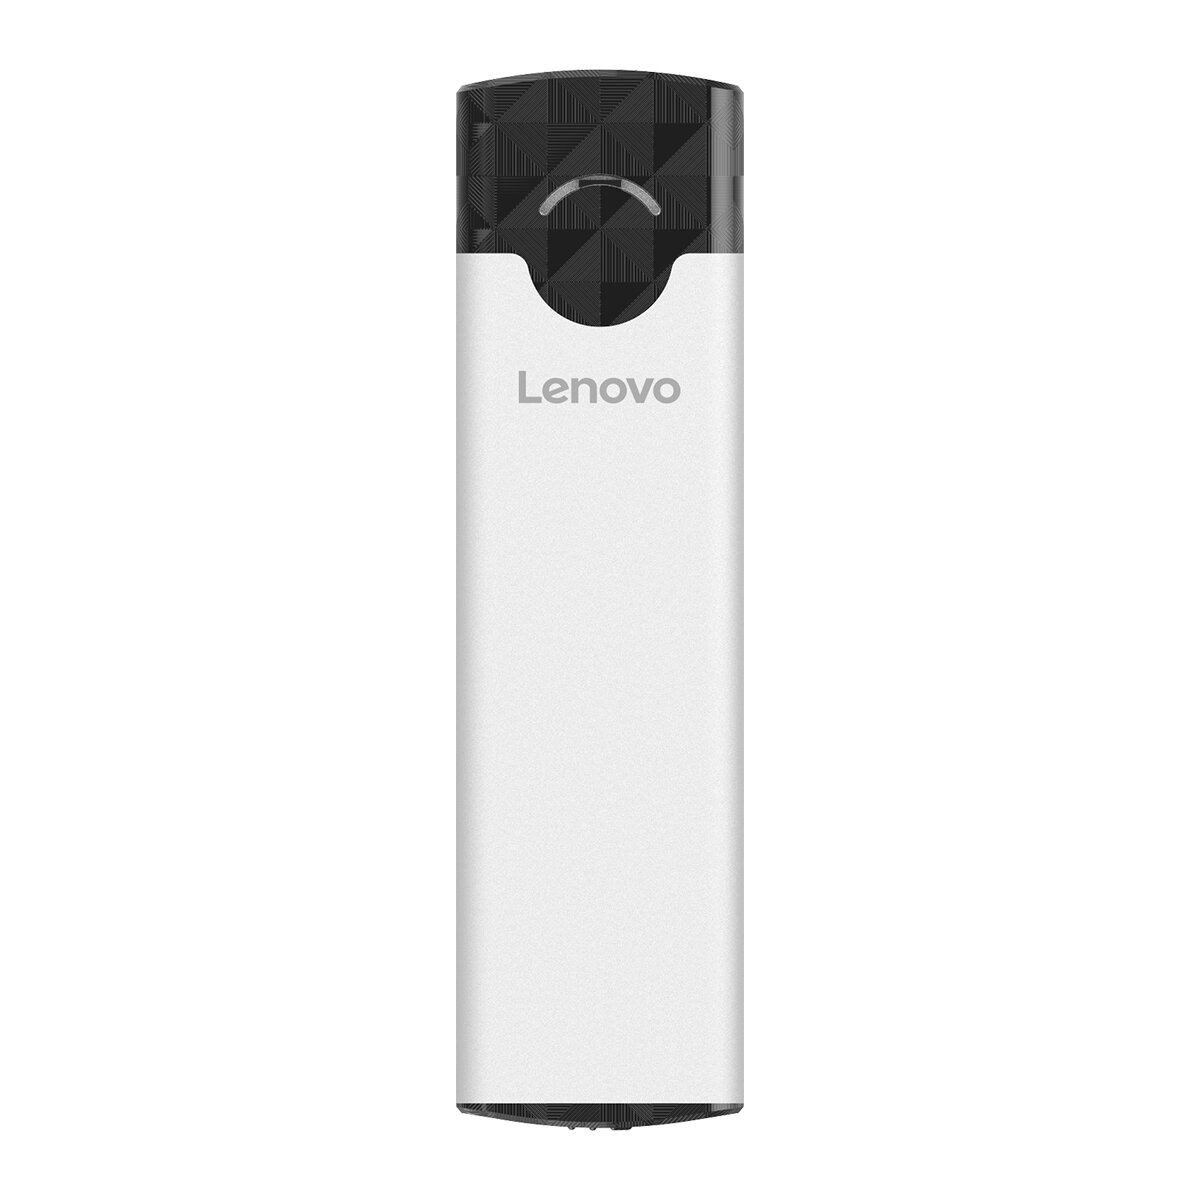 Lenovo M-01 M.2 NGFF外付けHDDエンクロージャーポータブルSATAハードドライブケースWindows Mac Linux用ハードディスクボックス